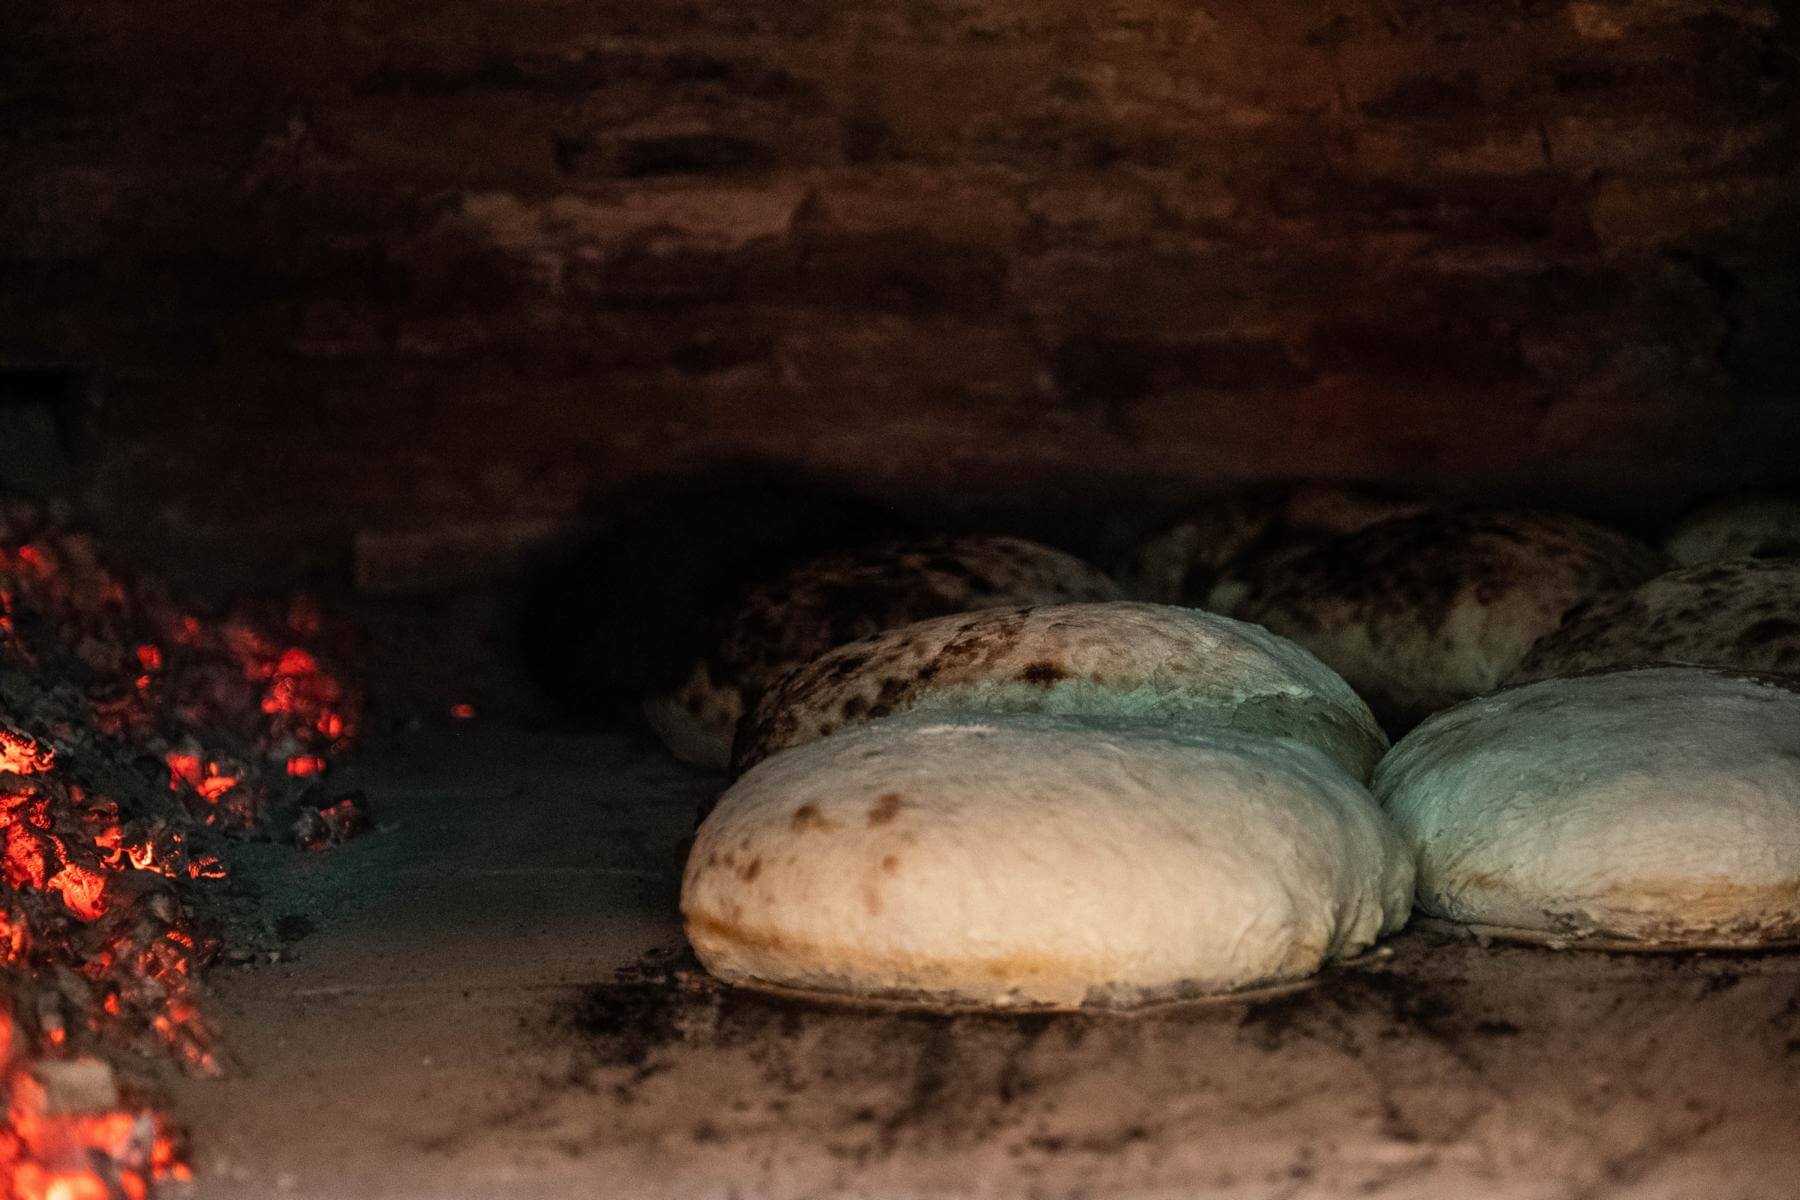 Traditional Bread-Making in a Village in Stejărișu